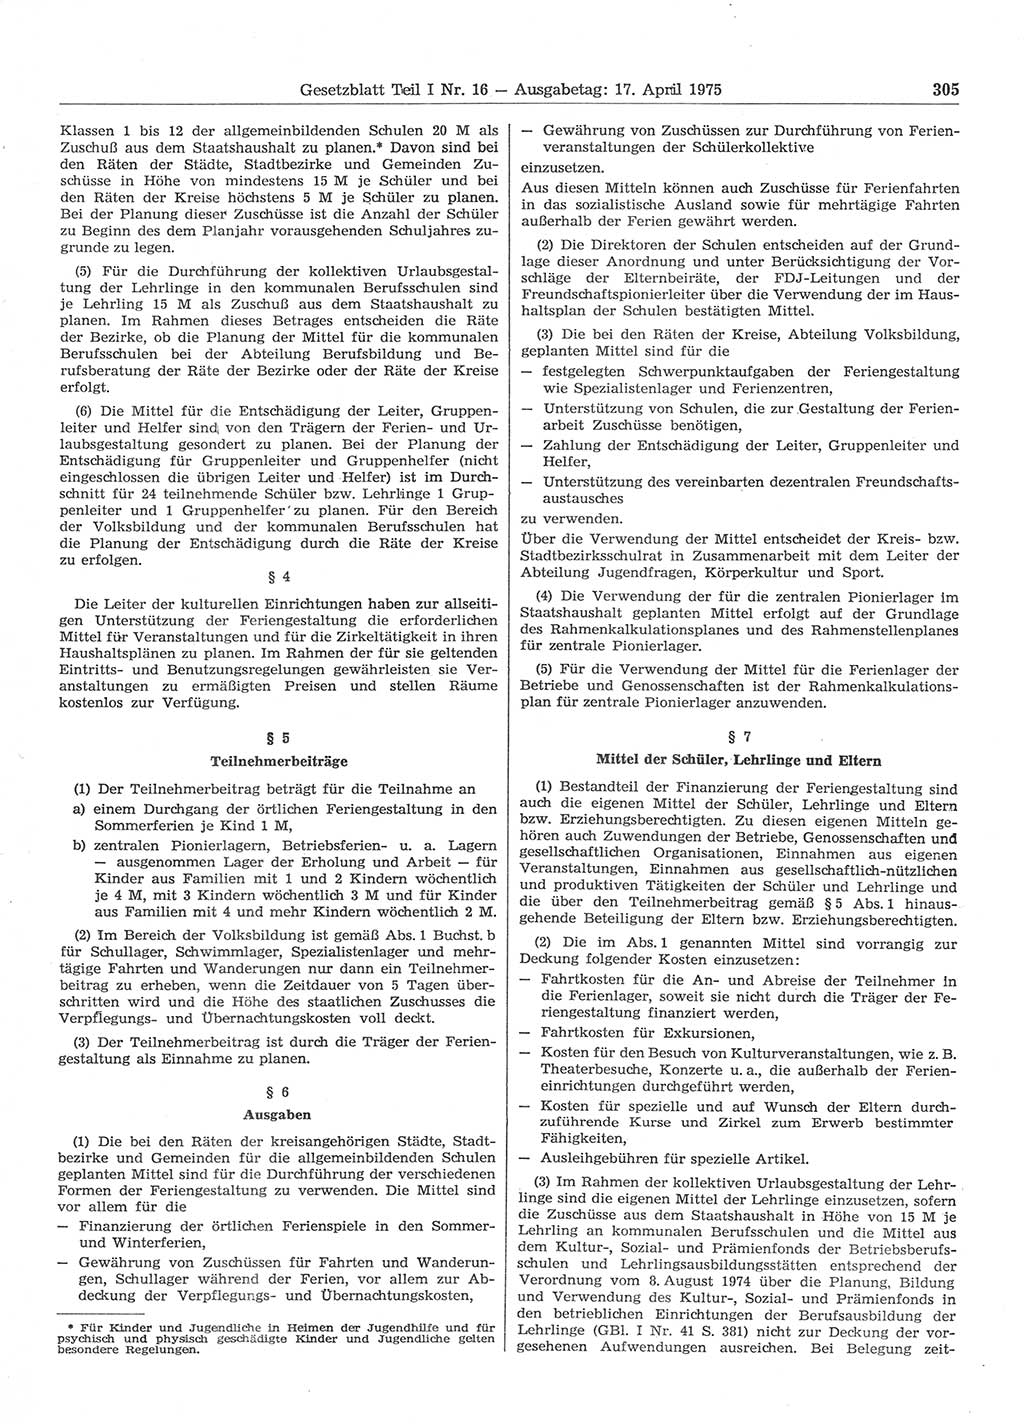 Gesetzblatt (GBl.) der Deutschen Demokratischen Republik (DDR) Teil Ⅰ 1975, Seite 305 (GBl. DDR Ⅰ 1975, S. 305)